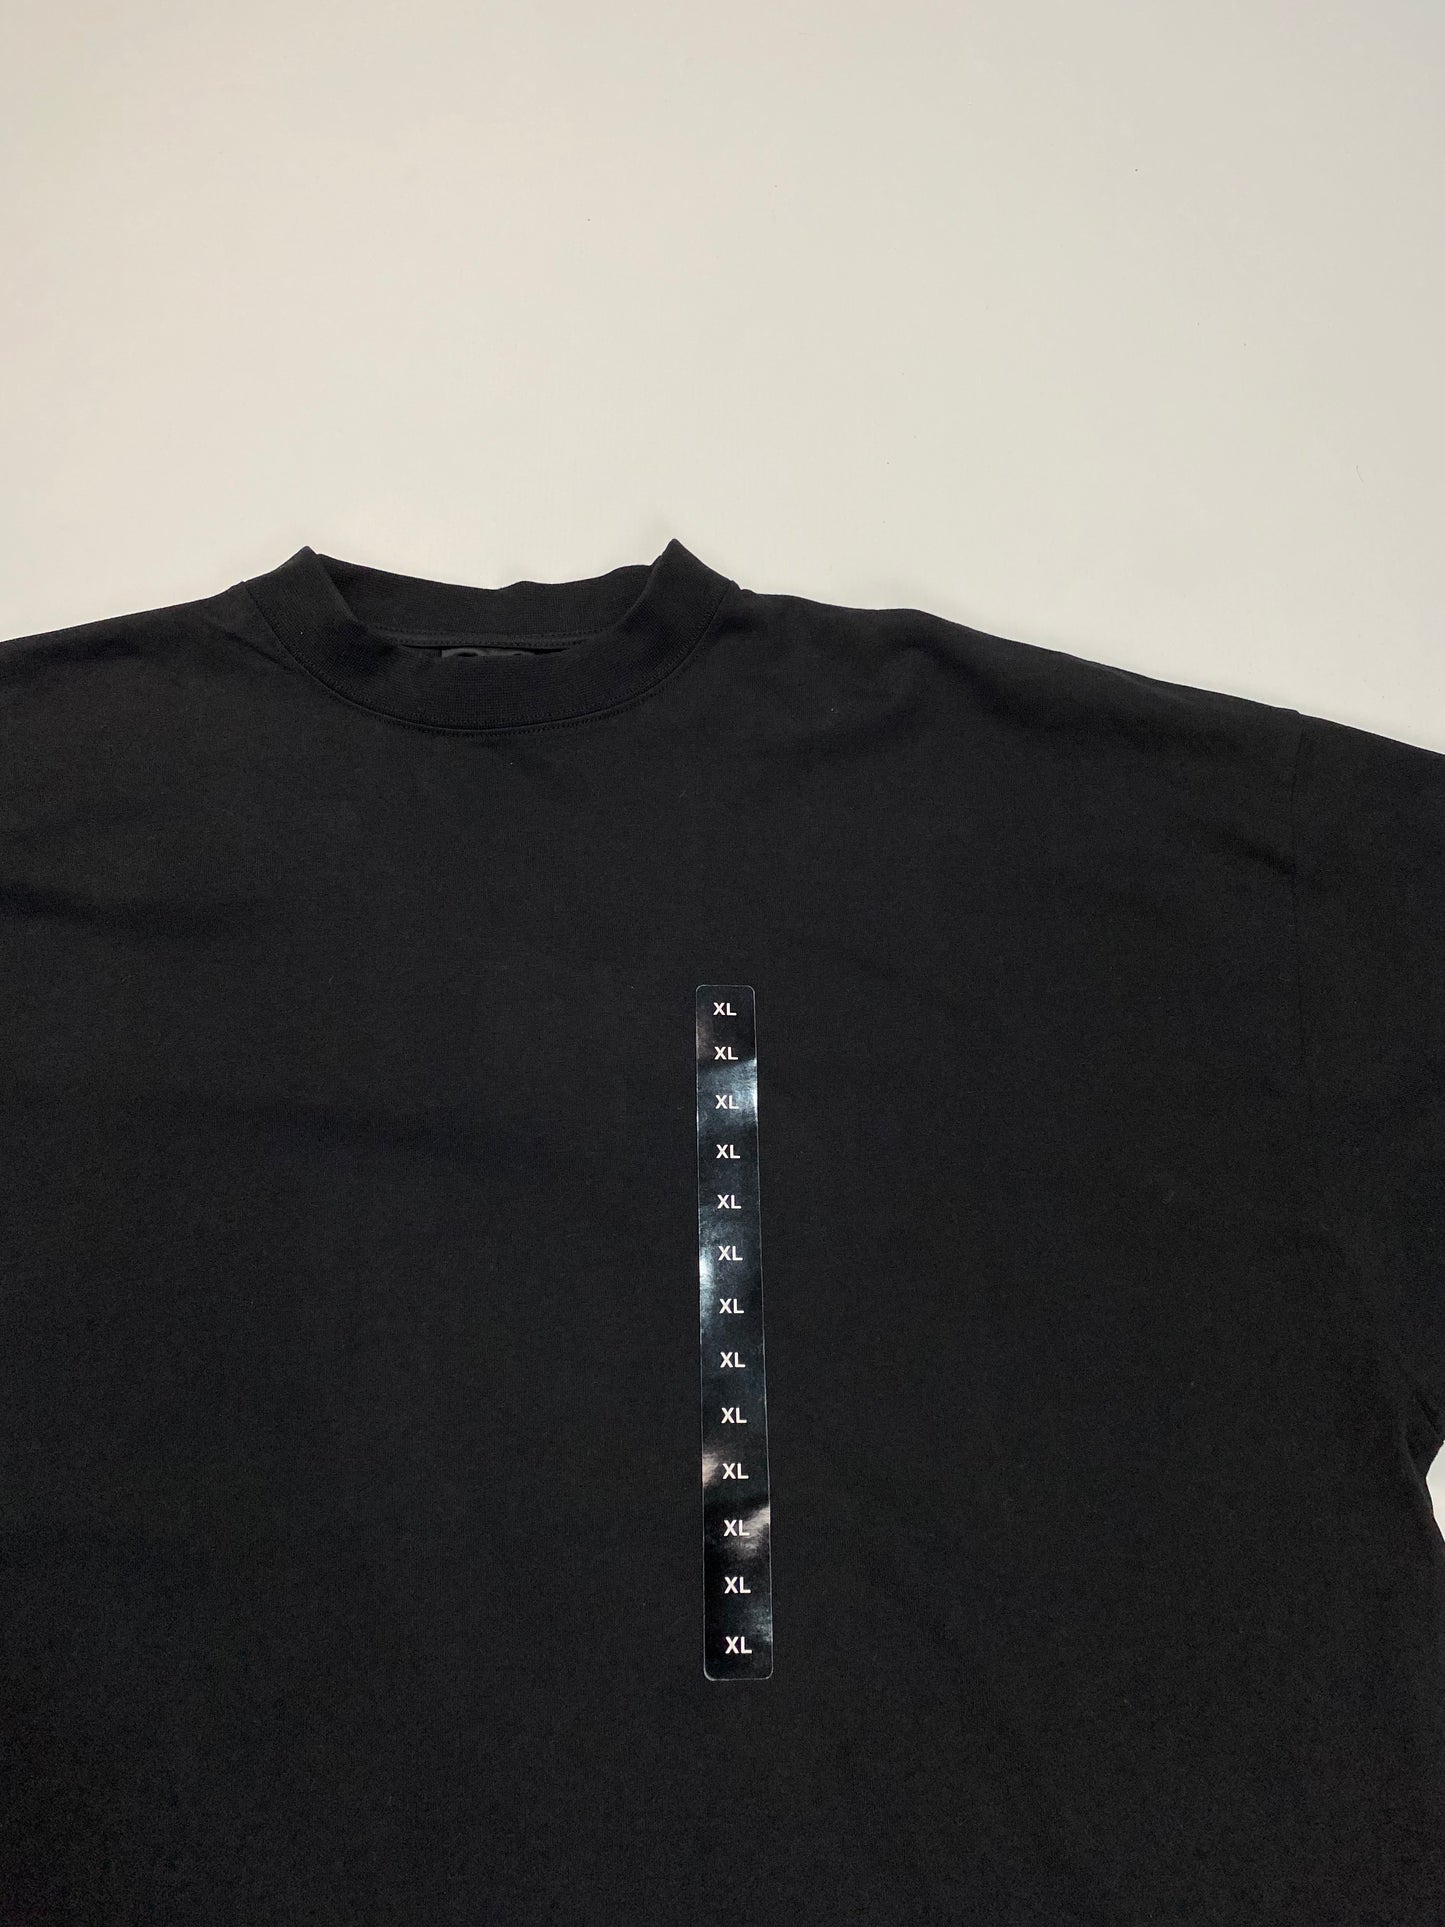 Balenciaga XL Sticker tshirt SZ:1